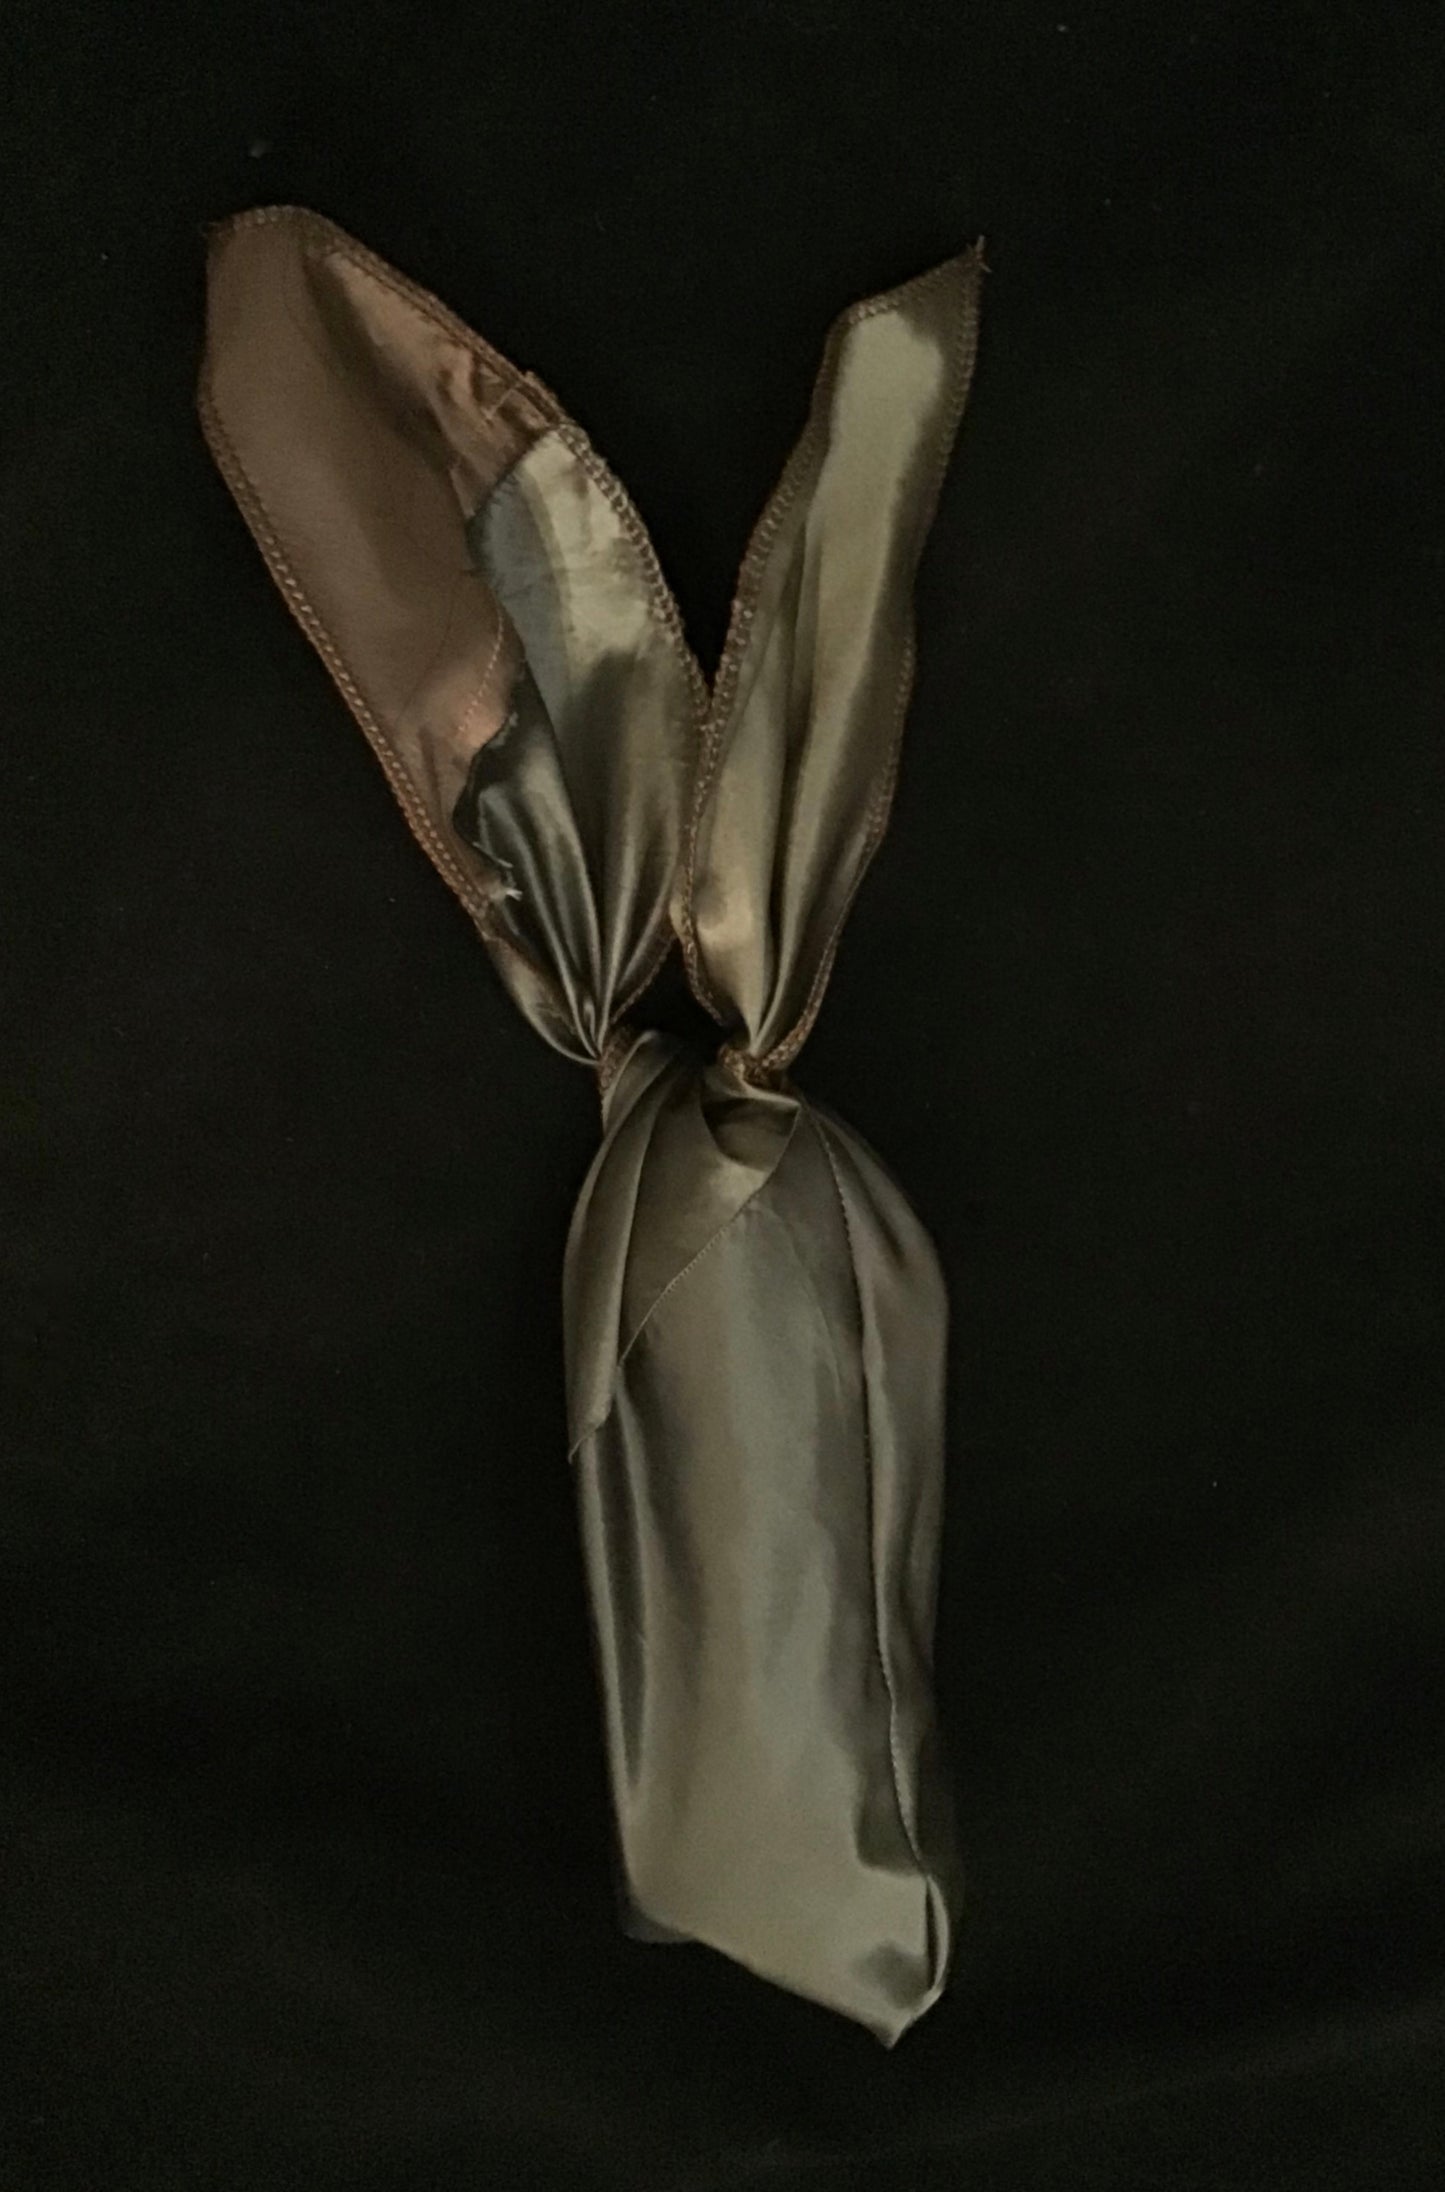 Mini Twisturban in bronze/ gunmetal silk taffeta